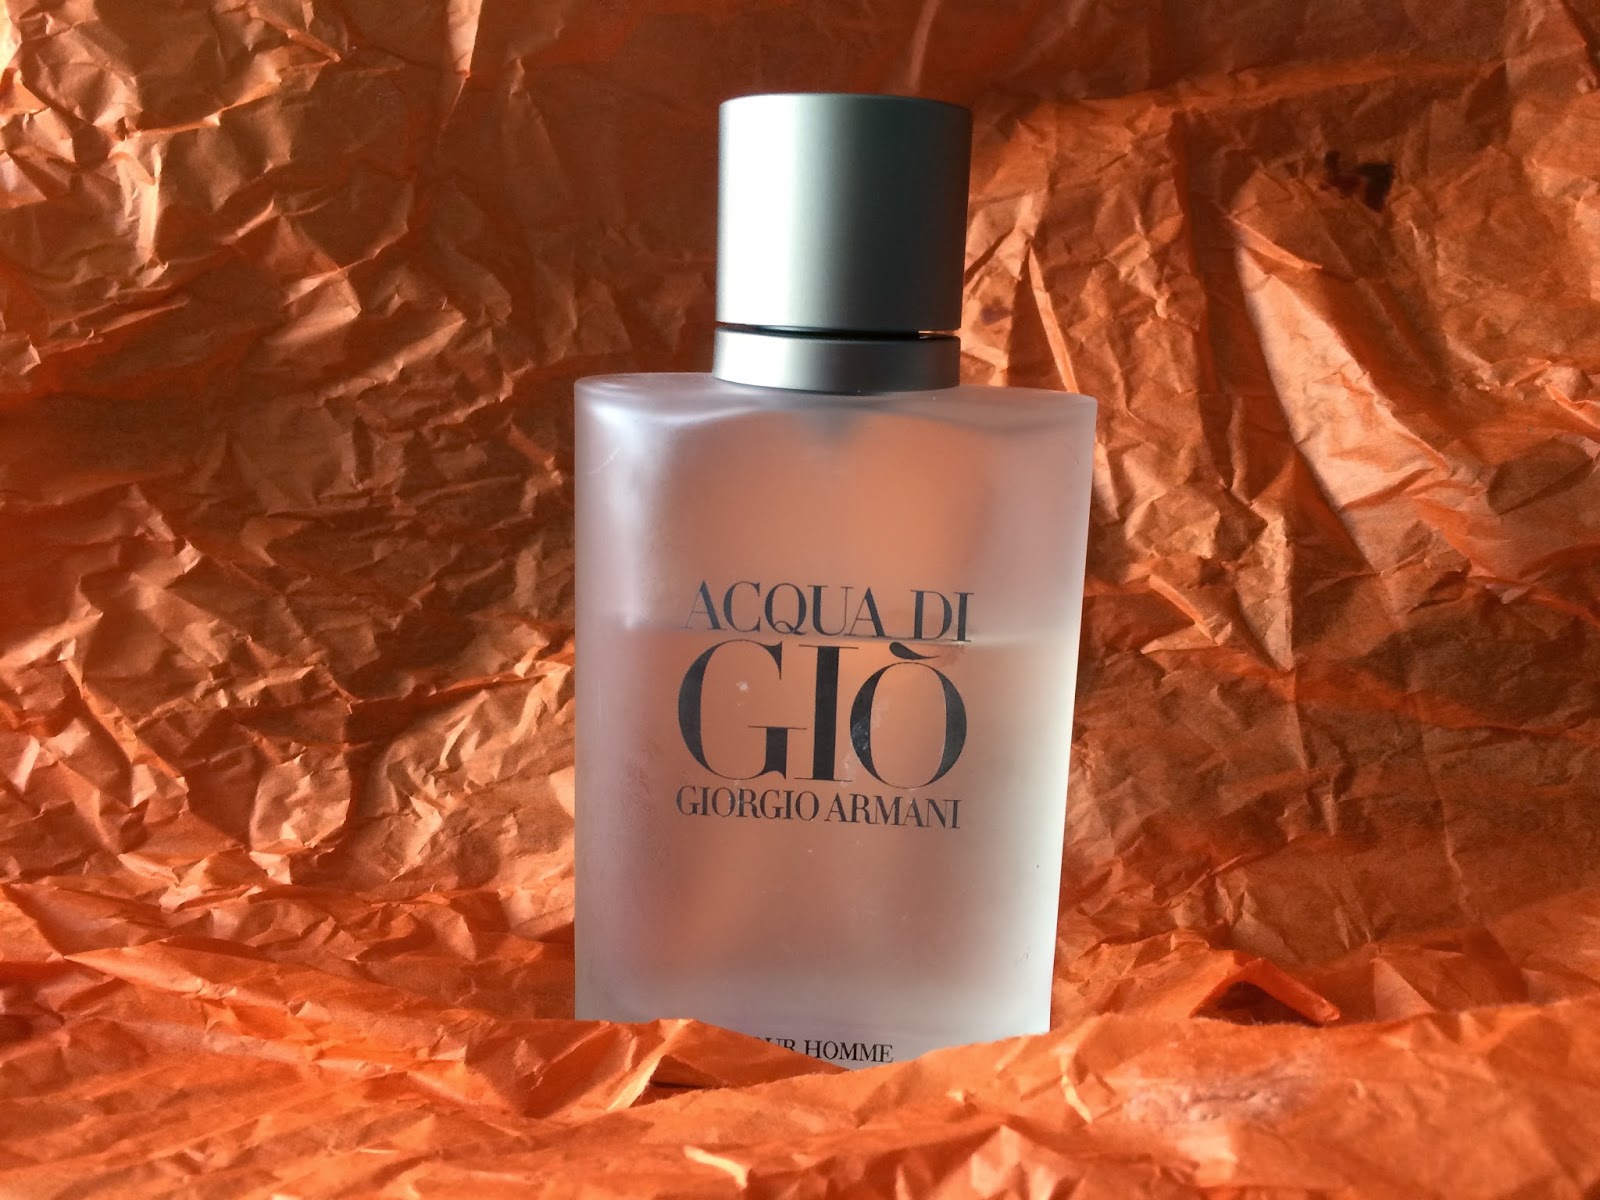 Acqua De Gio by Giorgio Armani